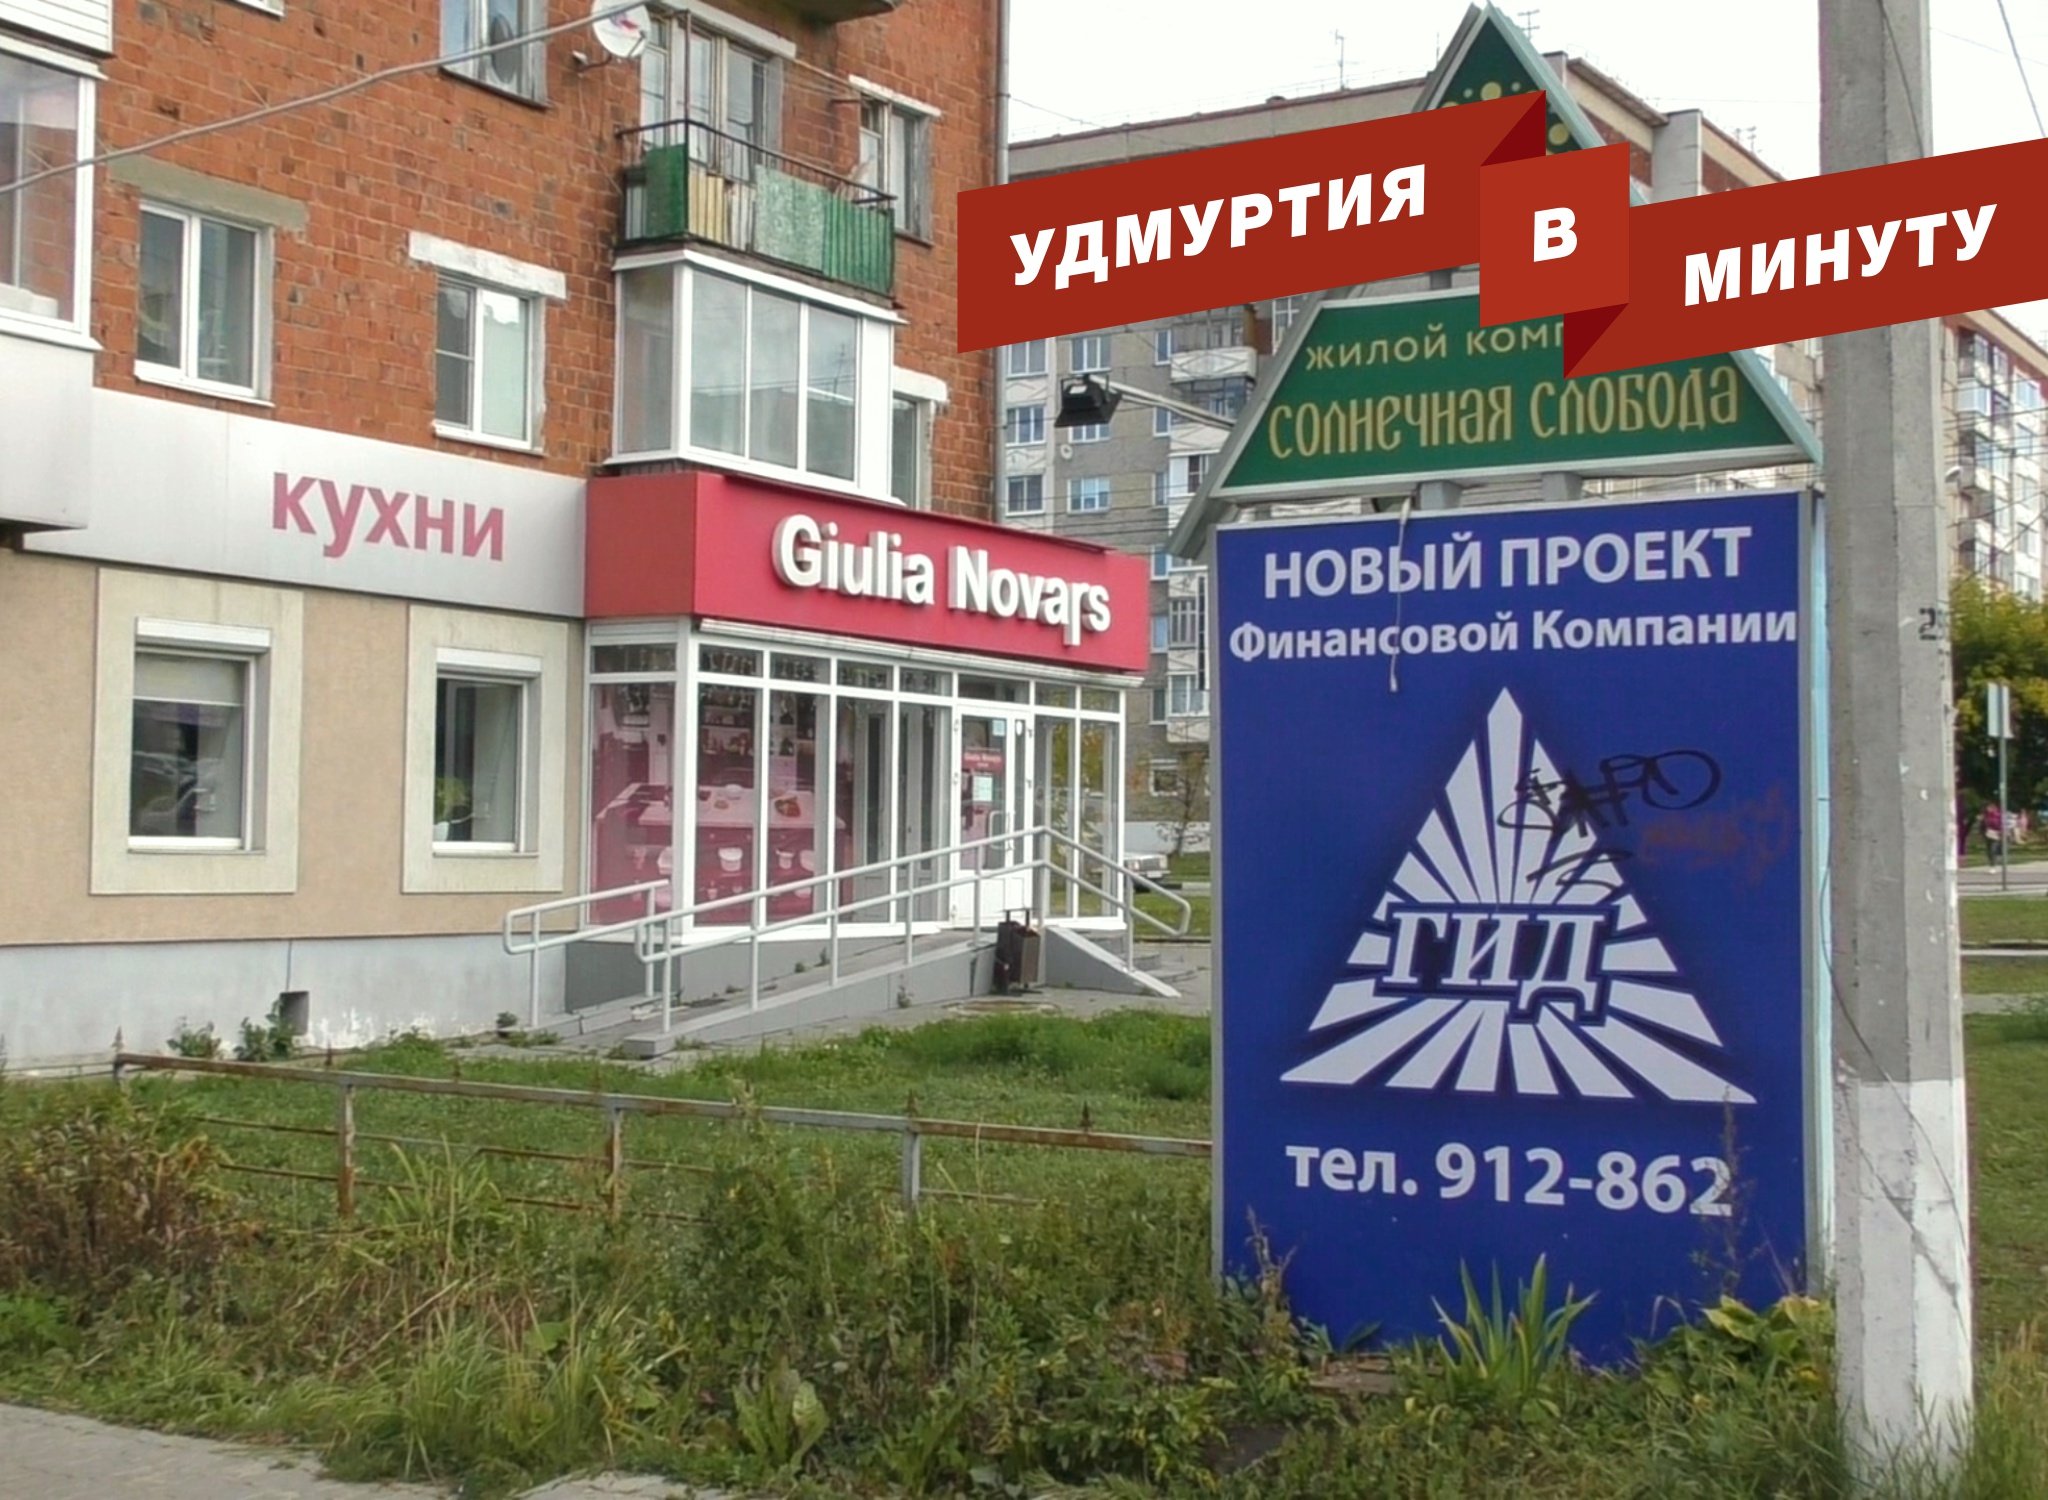 Сайт индустриального суда удмуртской республики. Компания Олзи в Ижевске.